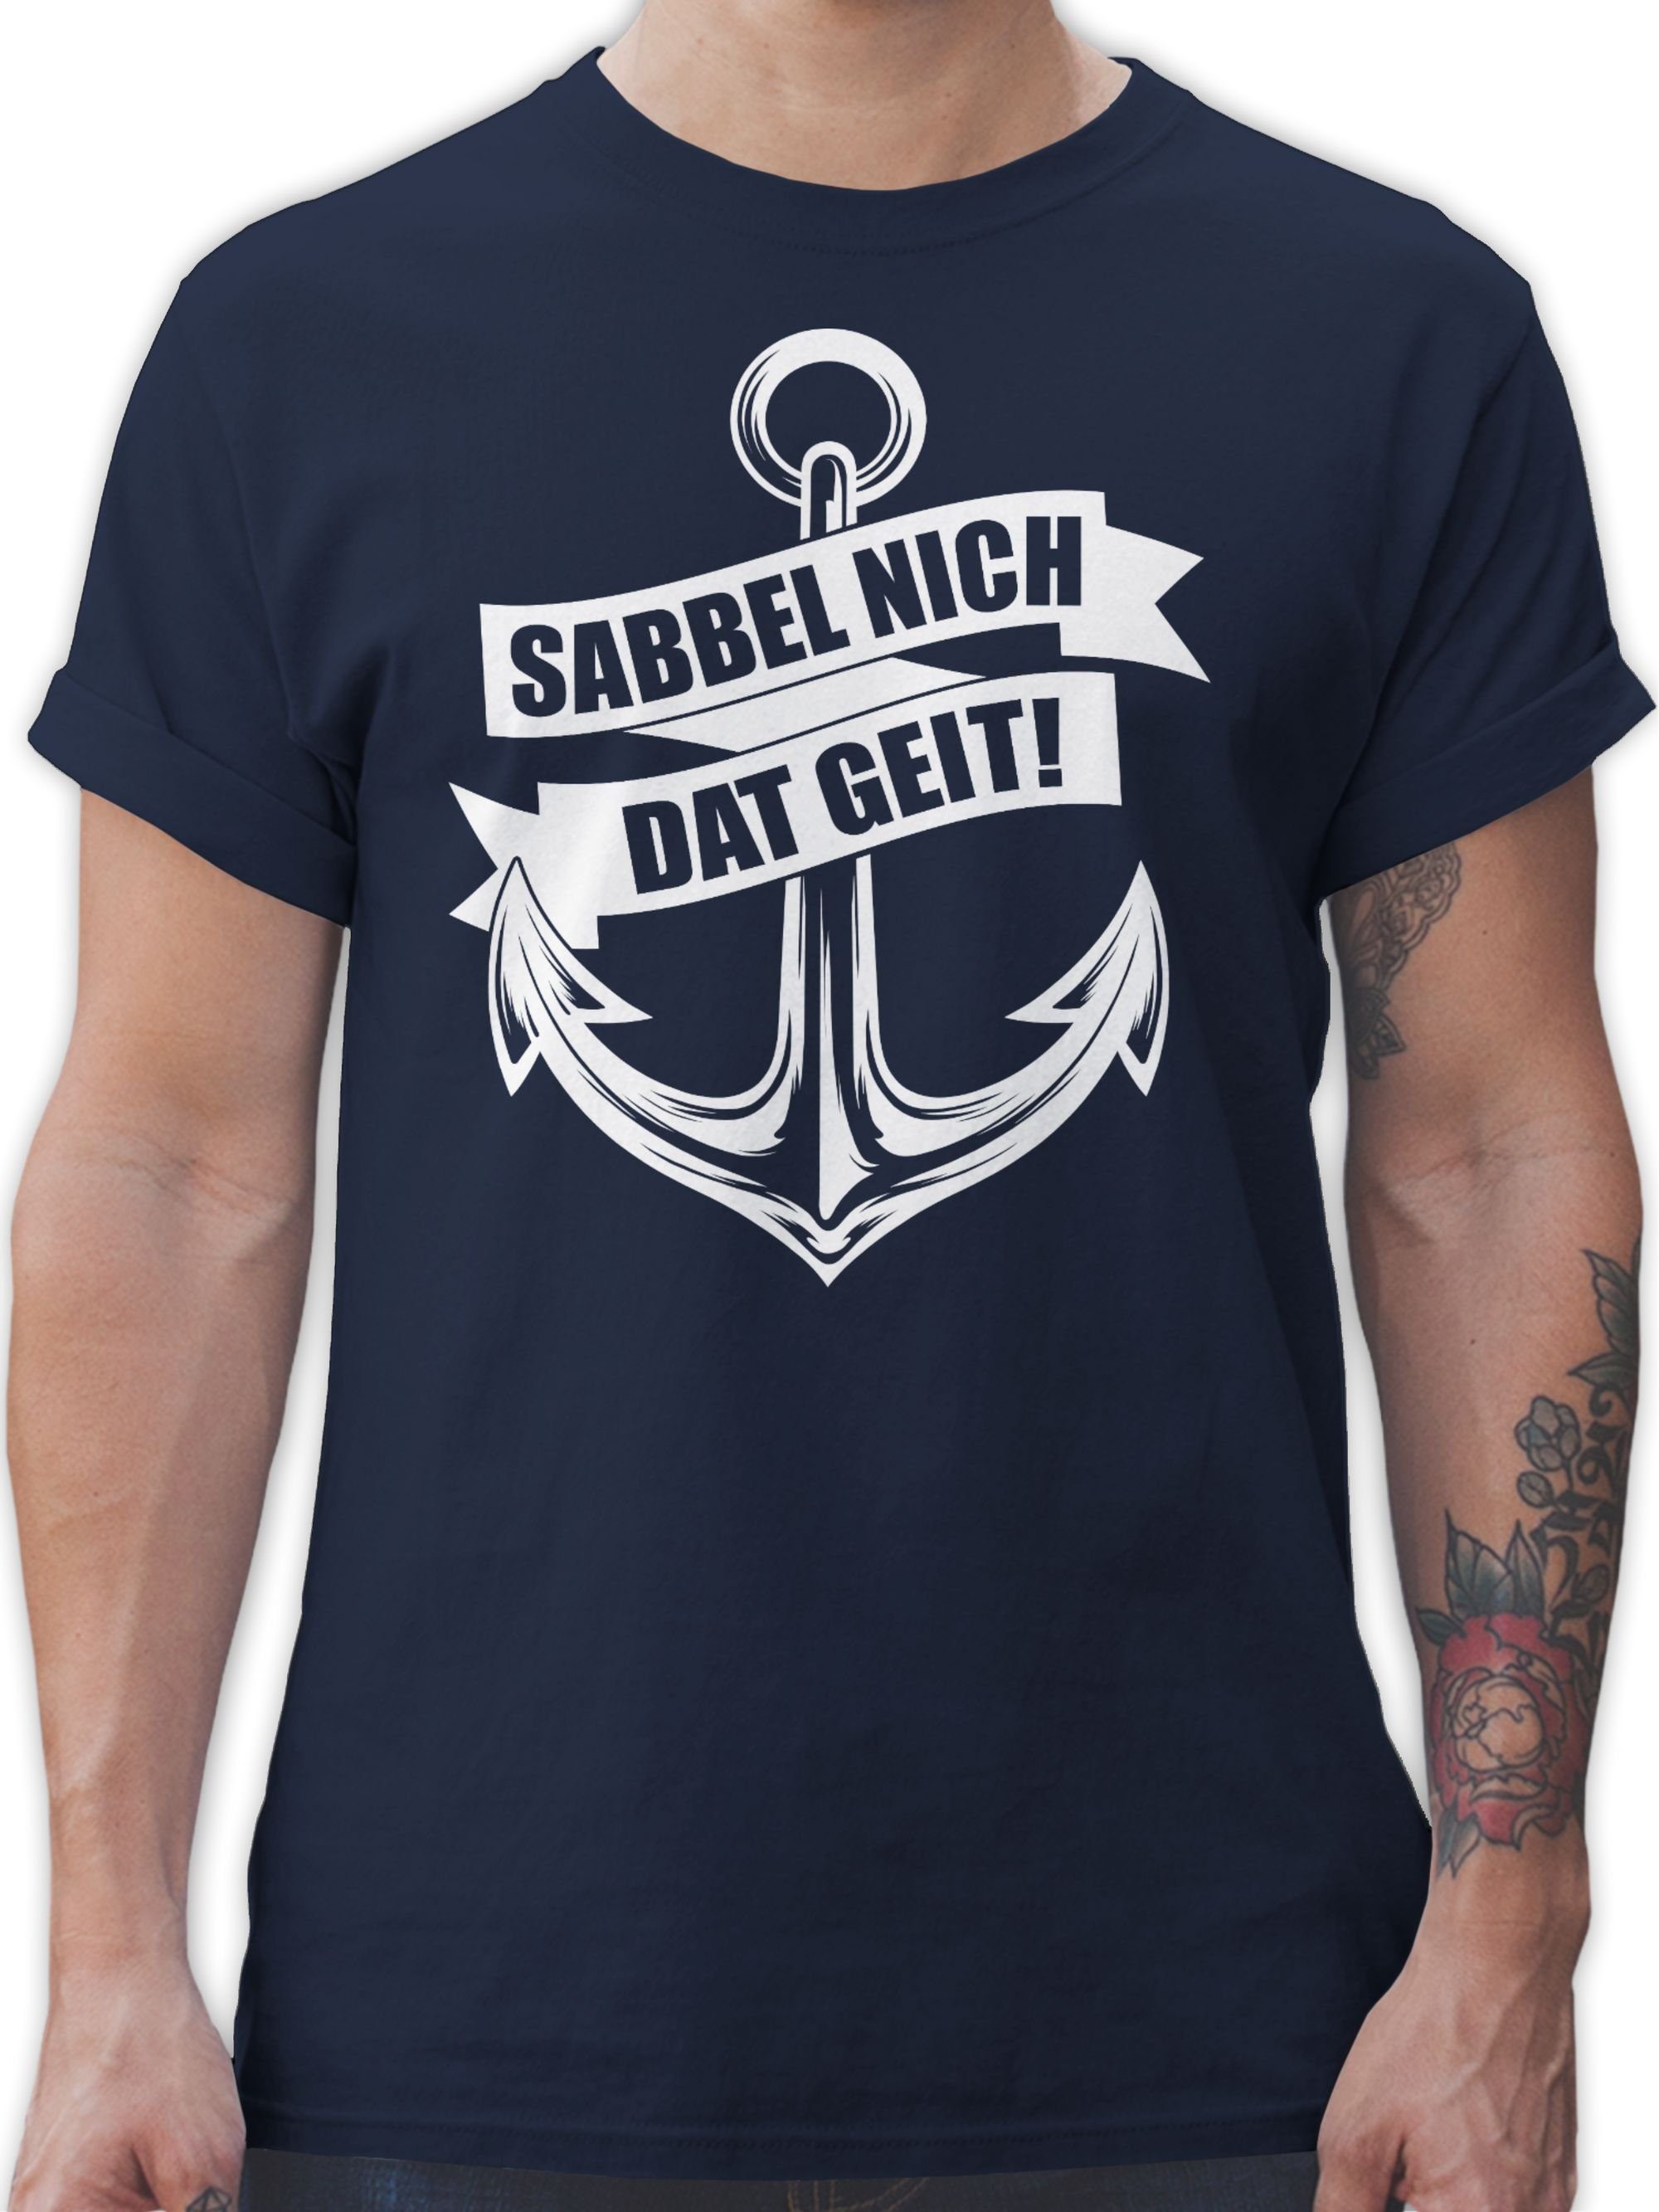 Shirtracer T-Shirt Sabbel nich dat weiß Statement Sprüche geit! 02 - Navy Blau